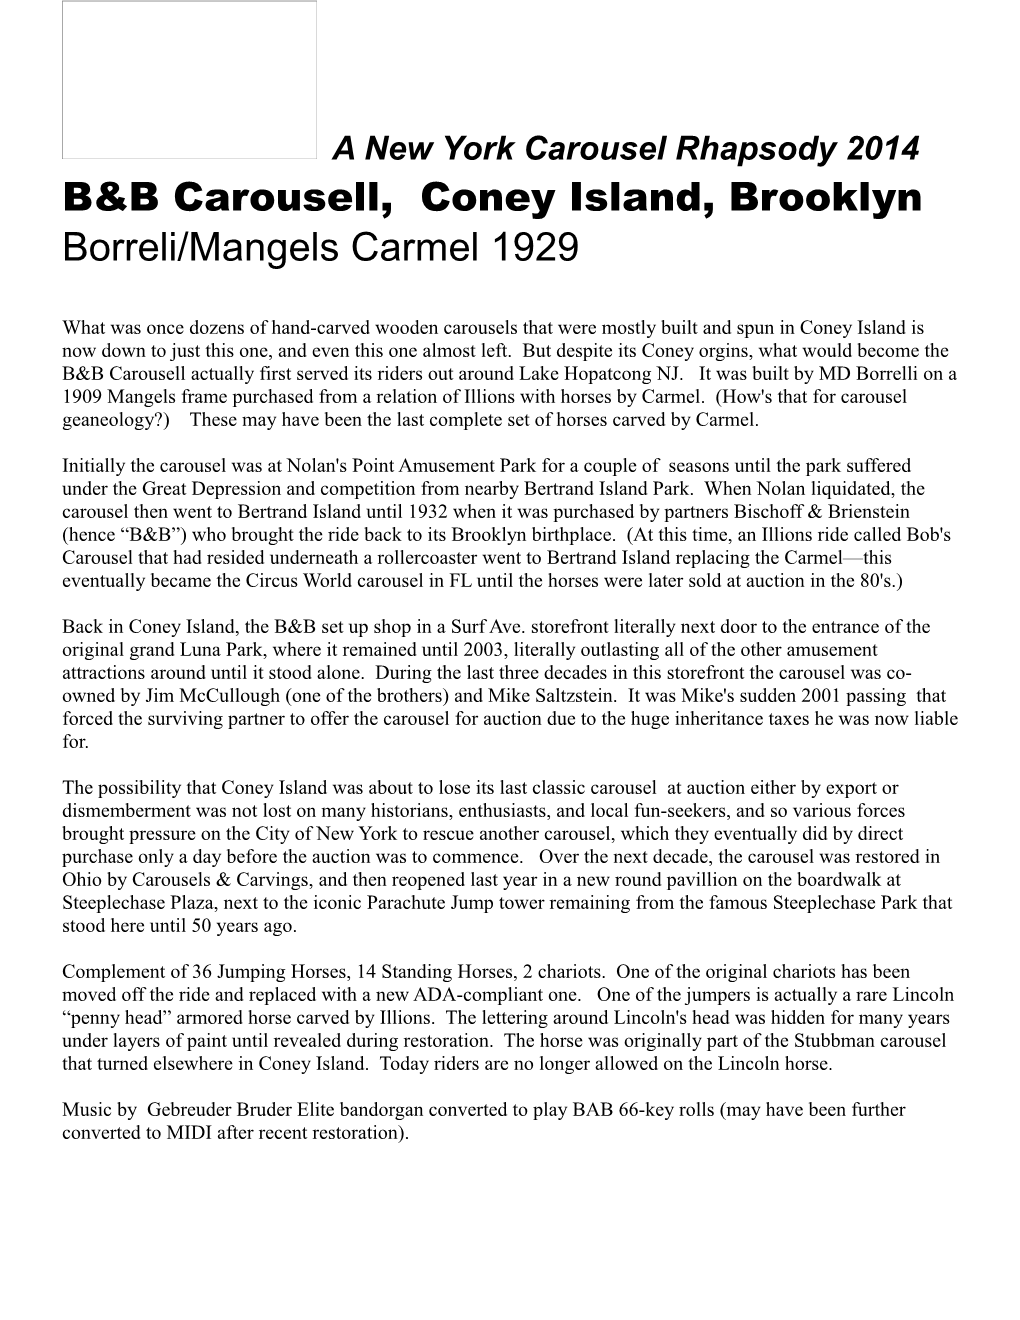 B&B Carousell, Coney Island, Brooklyn